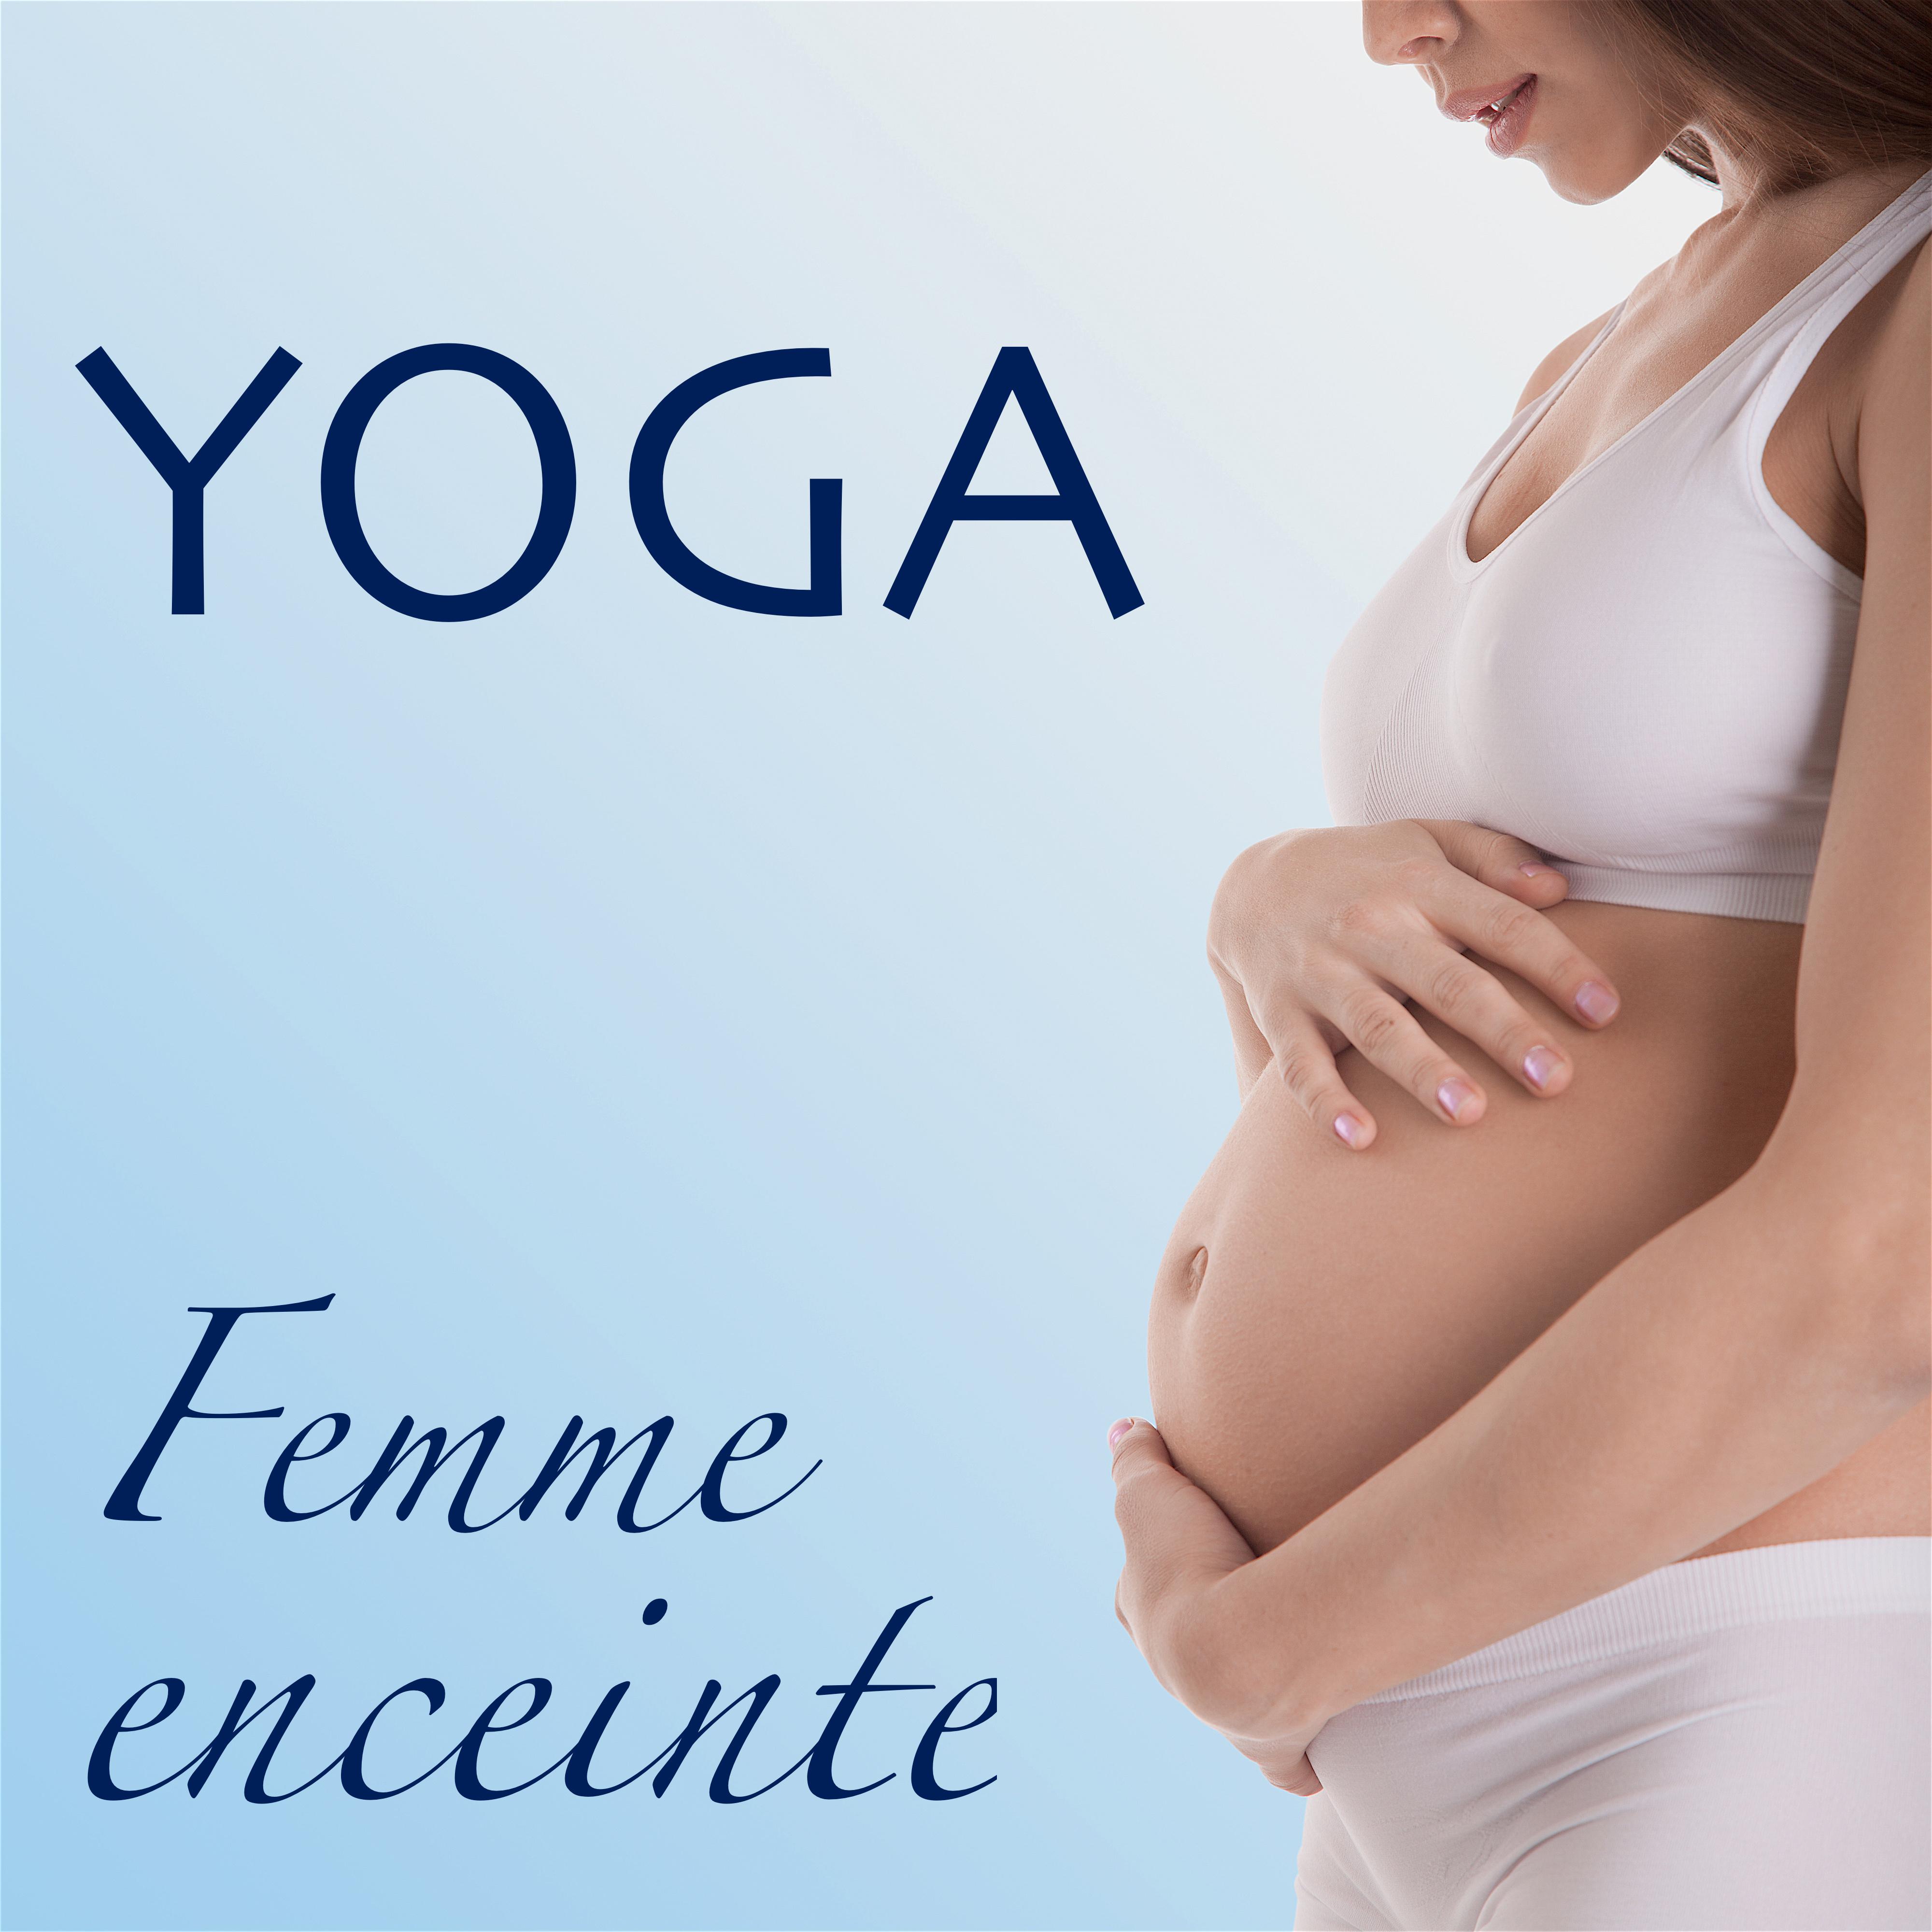 Yoga – Femme Enceinte: Musique Relaxante pour le Meilleur Grossesse avec Tranquillité et Sérénité, Chansons New Age pour Méditation Relaxante du Jour et Sommeil Paisible la Nuit